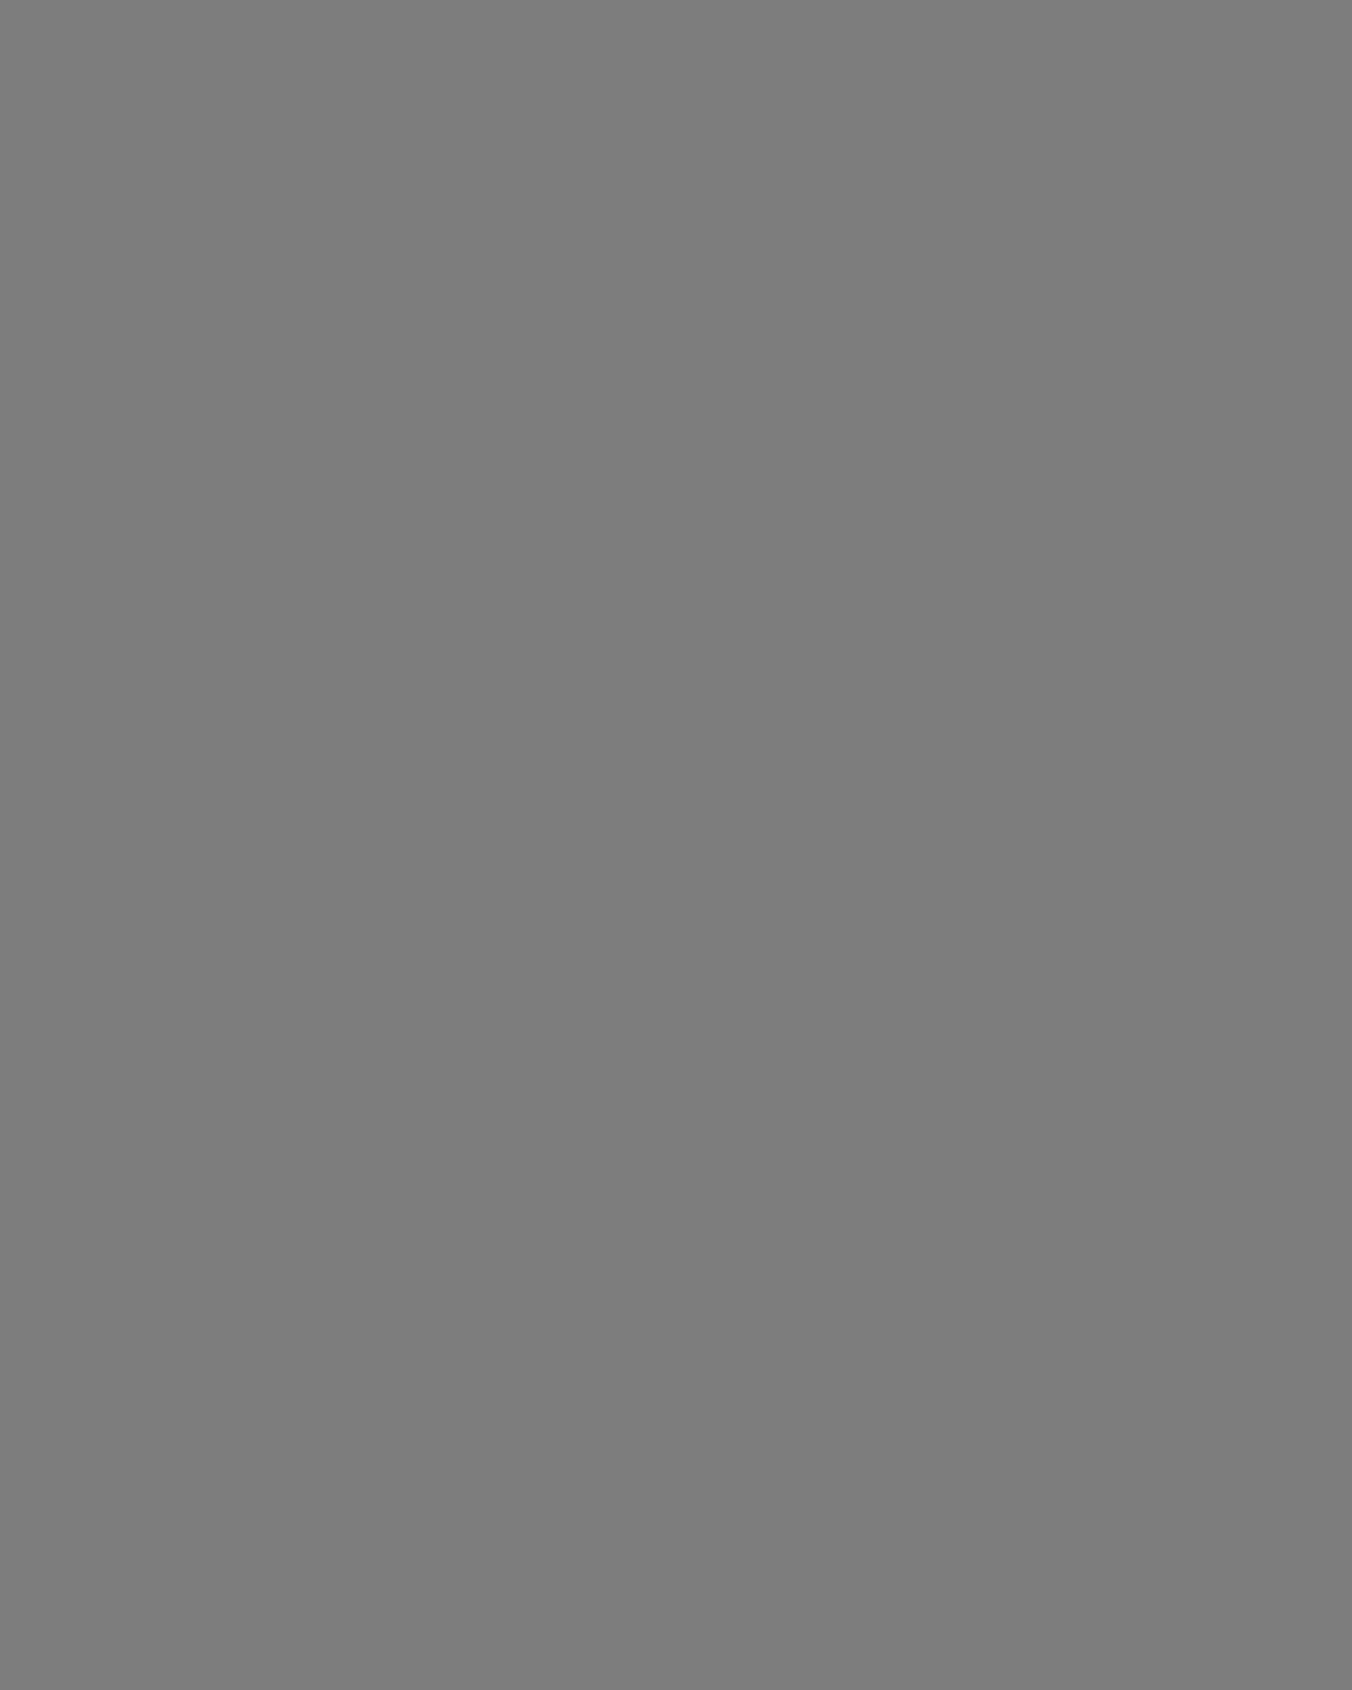 Роберт Рождественский в детстве. 1936 год. Фотография: Государственный музей истории литературы, искусства и культуры Алтая, Барнаул